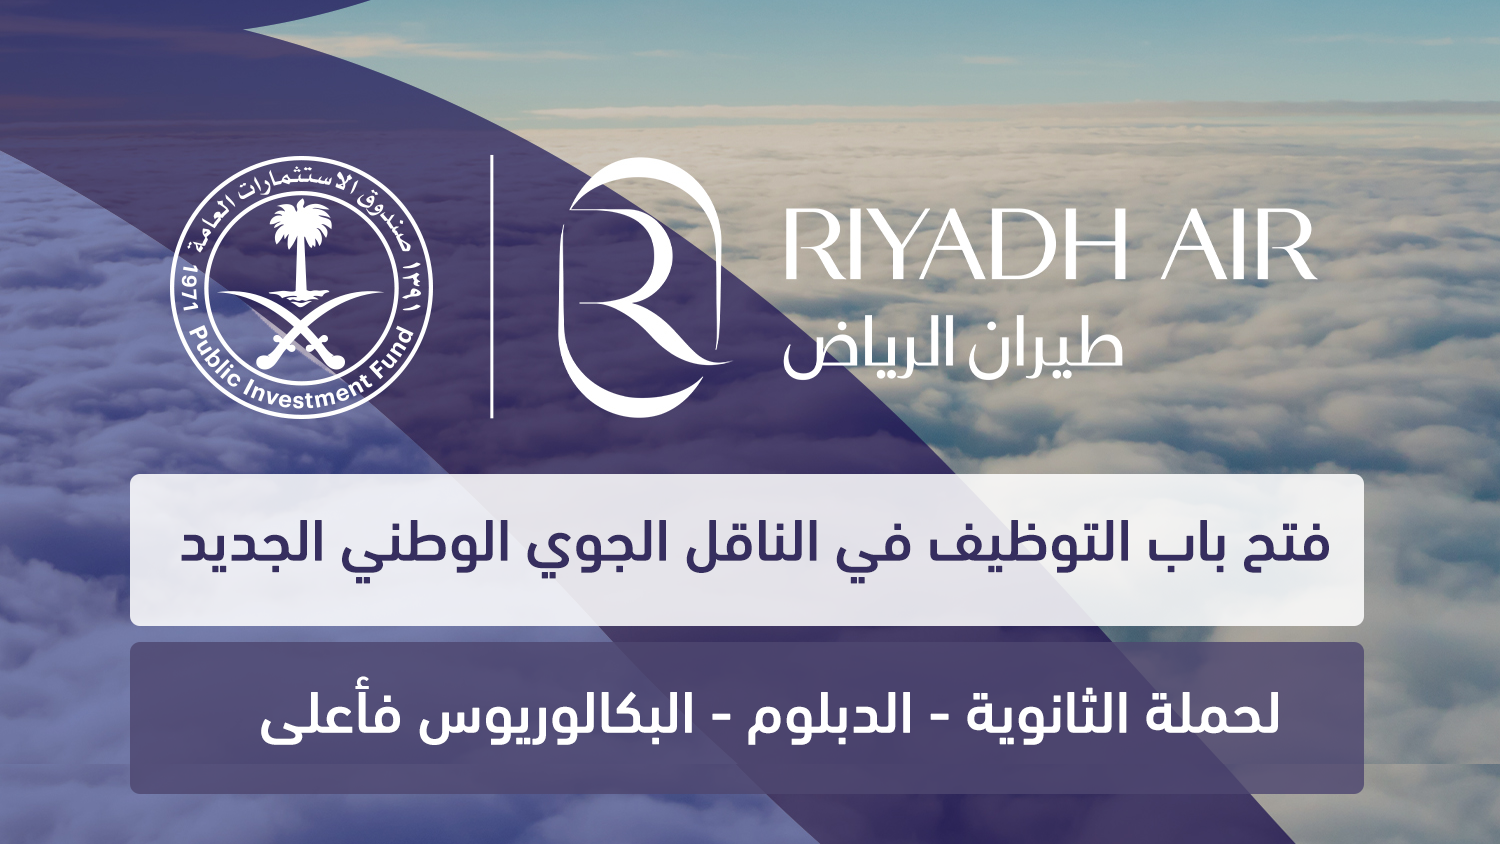 فتح التوظيف في طيران الرياض الناقل الجوي الوطني الجديد